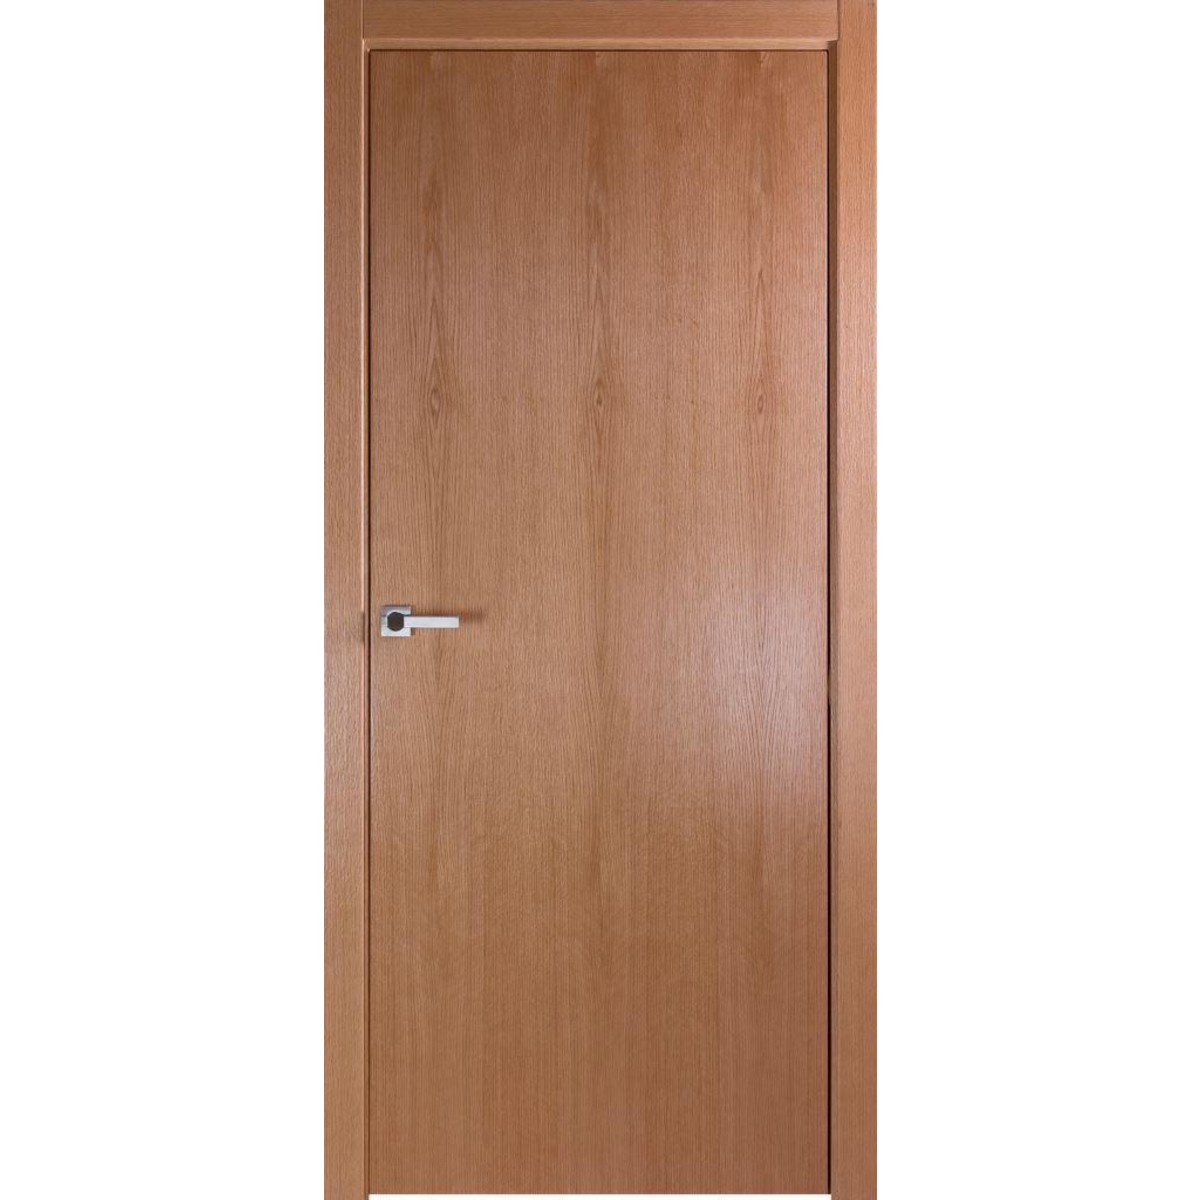 Дверь межкомнатная глухая без замка и петель в комплекте Лофтвуд 1 60x200 см шпон цвет дуб американский